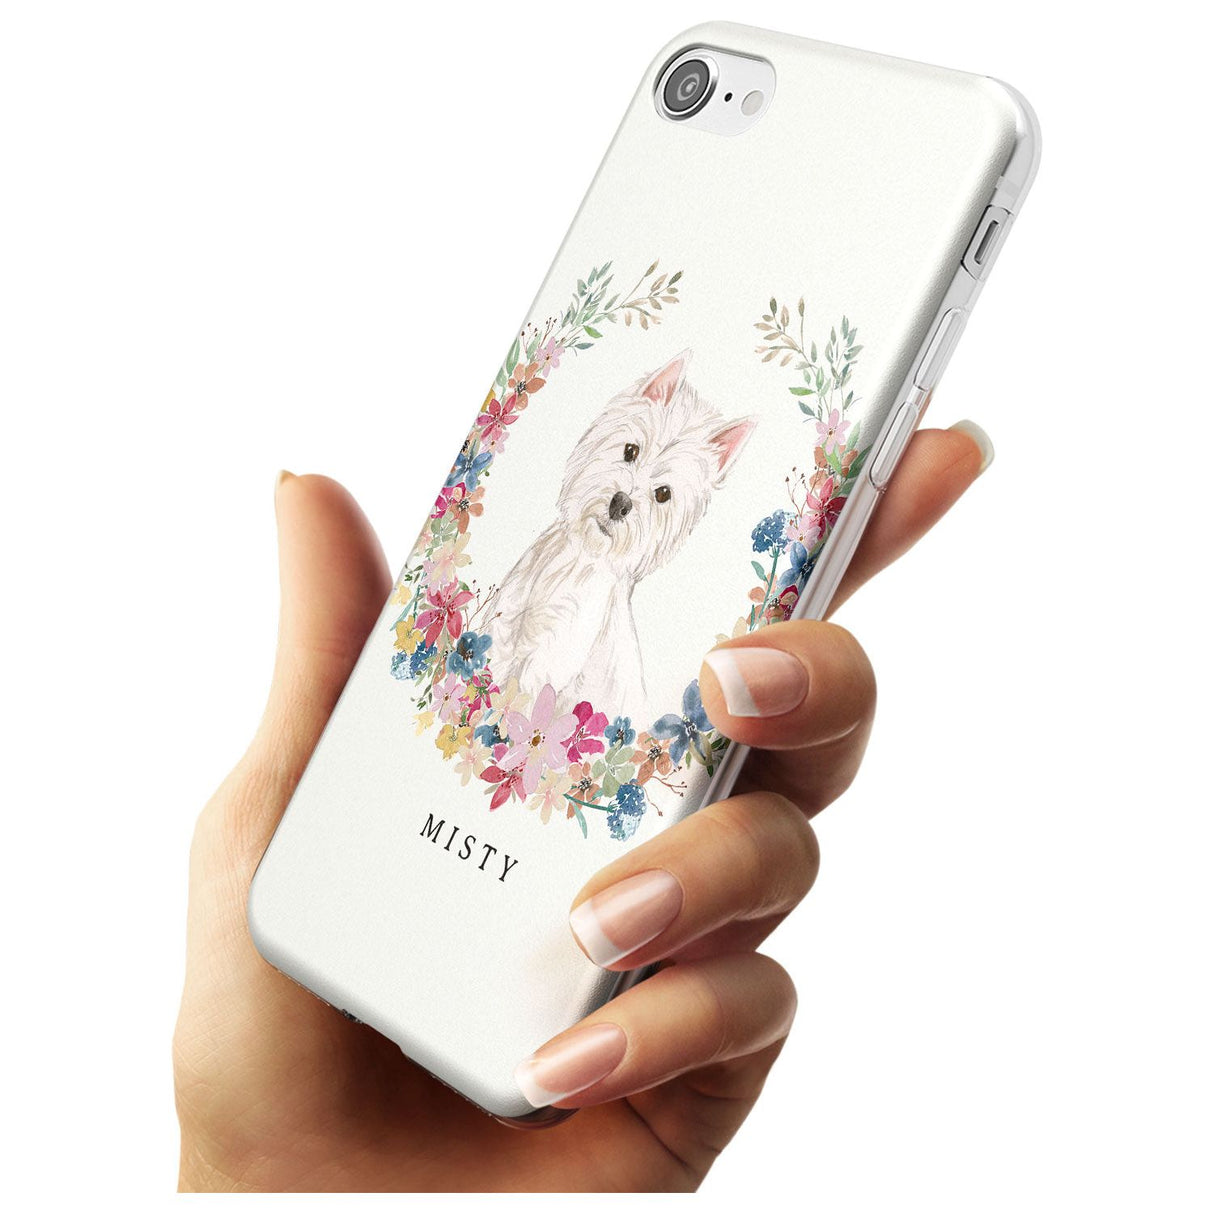 Westie Watercolour Dog Portrait Slim TPU Phone Case for iPhone SE 8 7 Plus